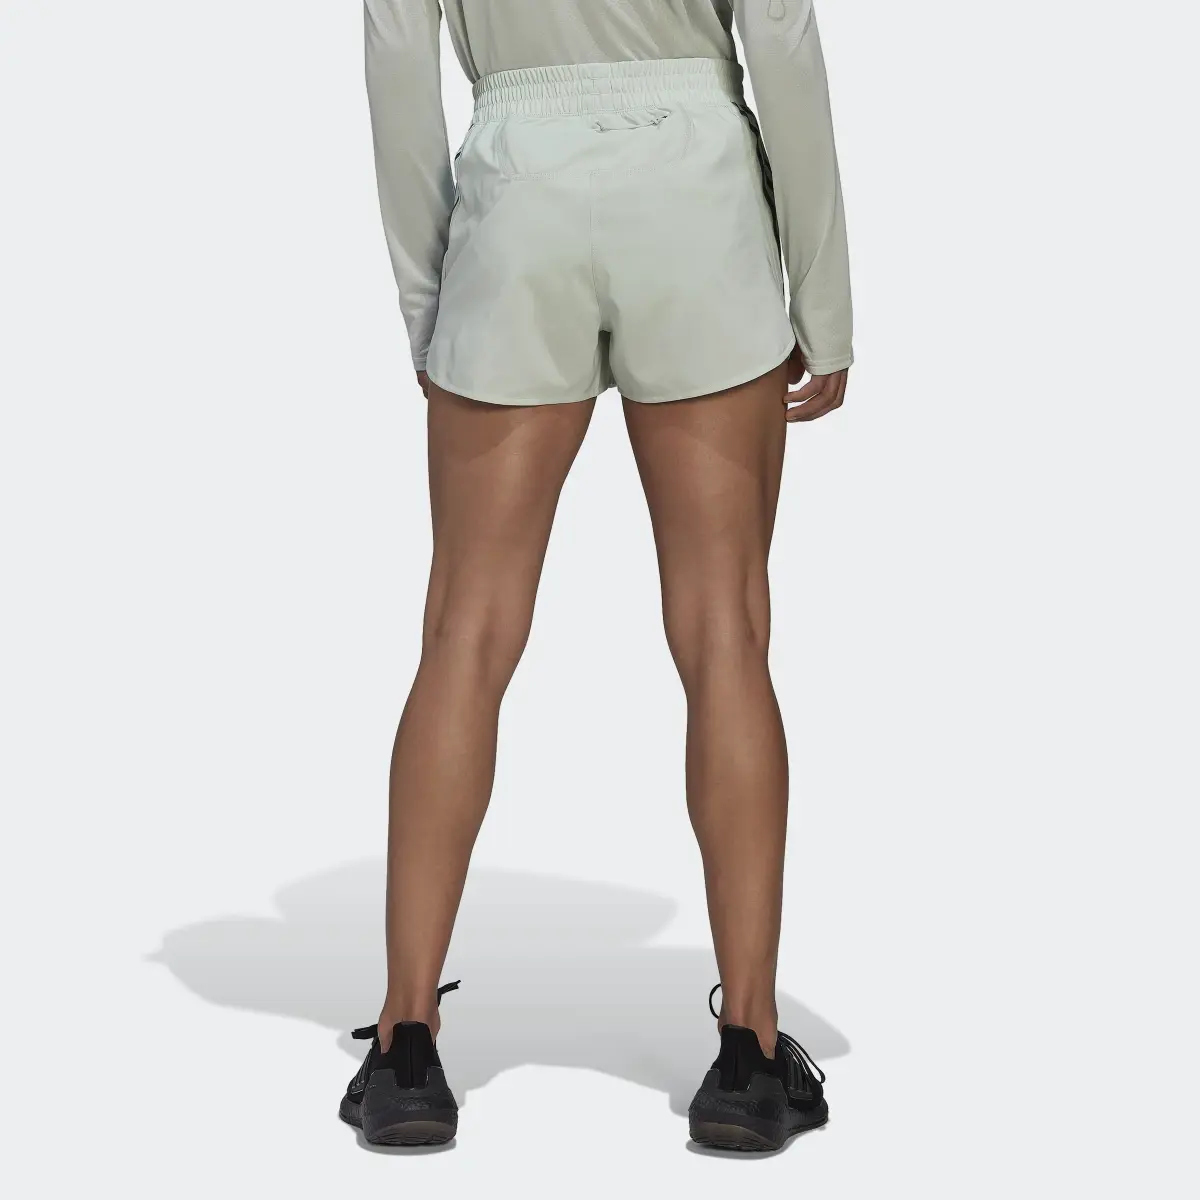 Adidas Run Icons 3-Streifen Running Shorts. 2